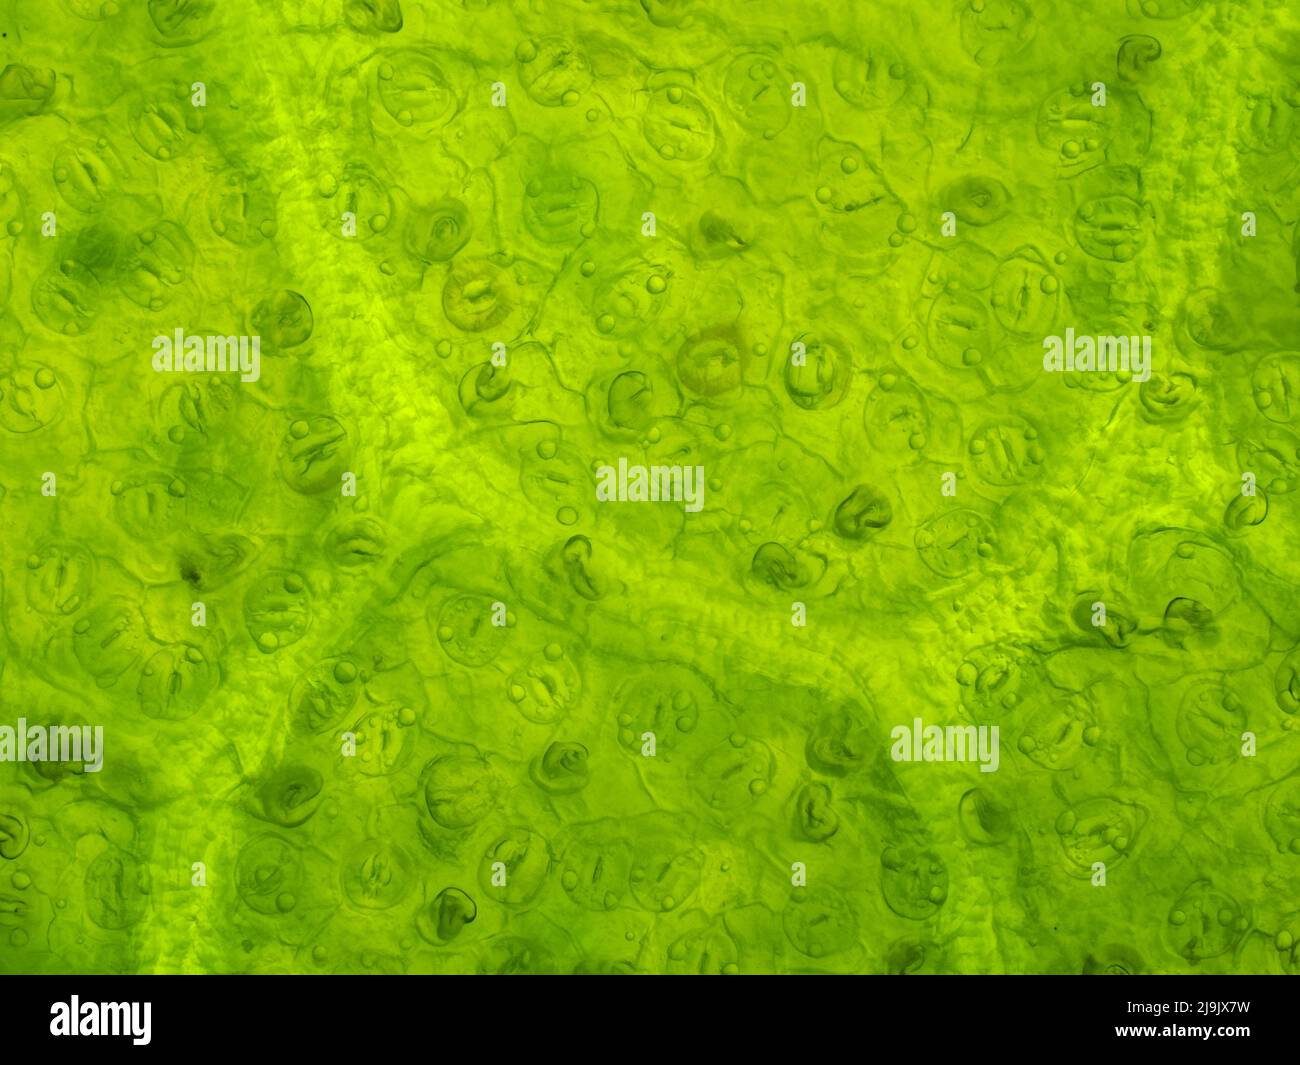 Magnolienblatt unter dem Mikroskop, zeigt zahlreiche Stomata; horizontales Sichtfeld beträgt etwa 0,61 mm Stockfoto